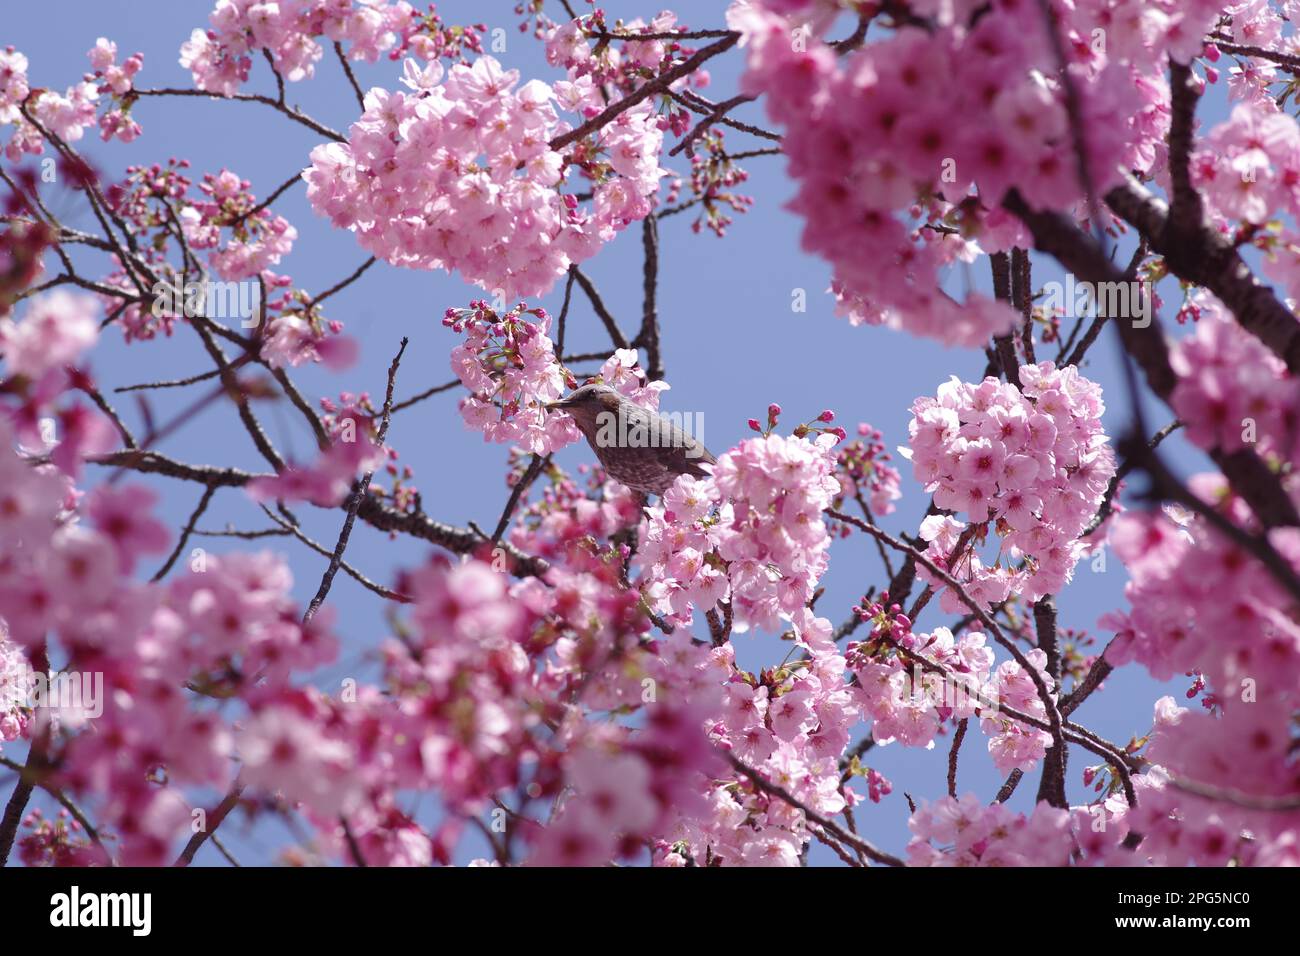 Oiseau et fleurs de cerisier Banque D'Images